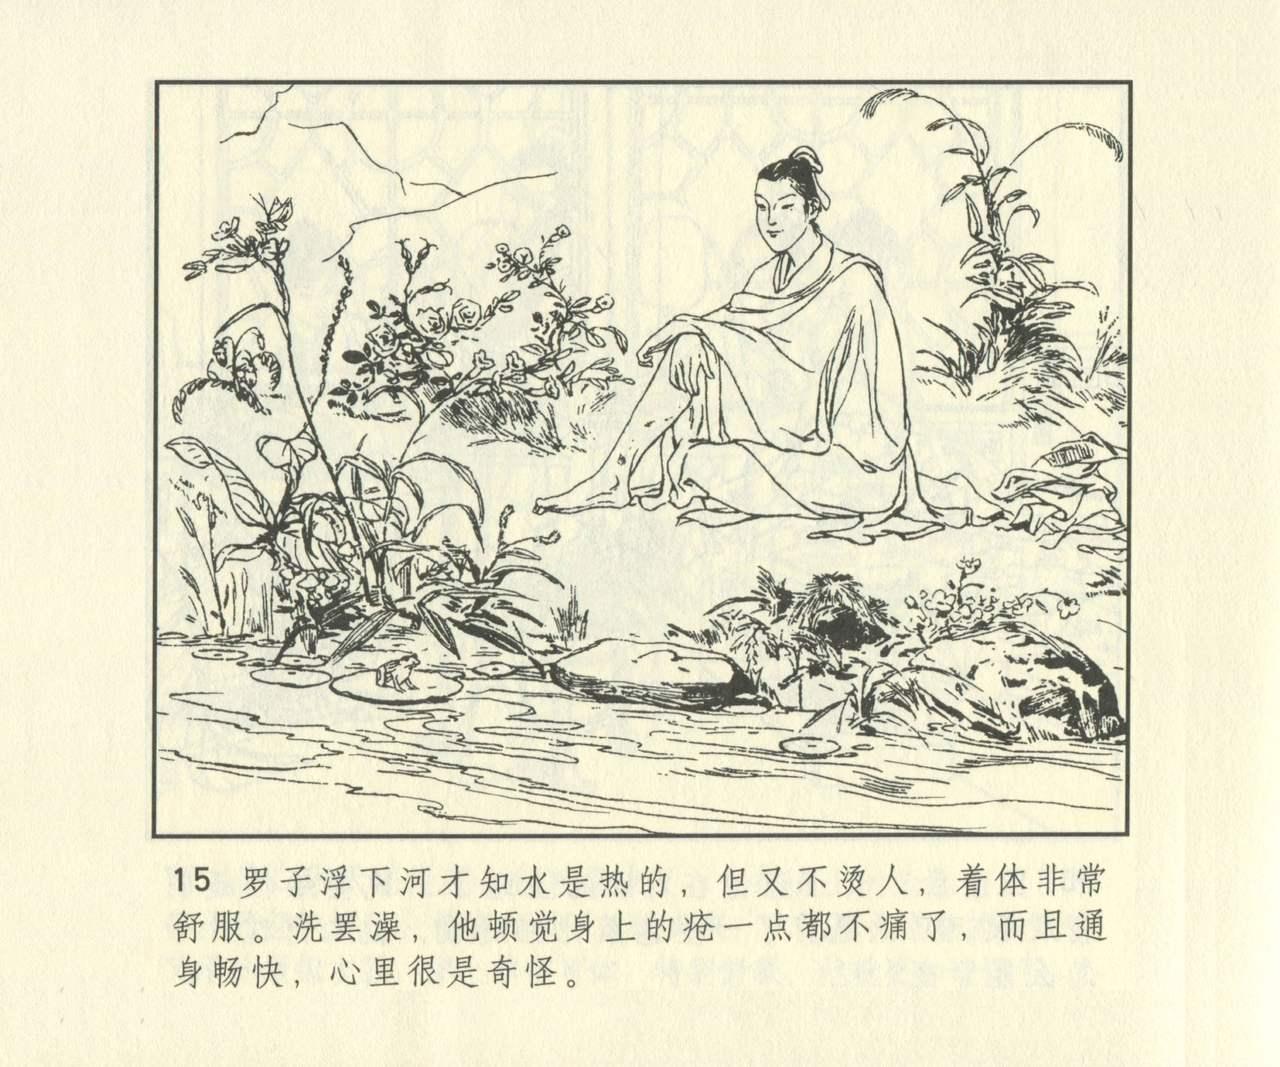 聊斋志异 张玮等绘 天津人民美术出版社 卷二十一 ~ 三十 631